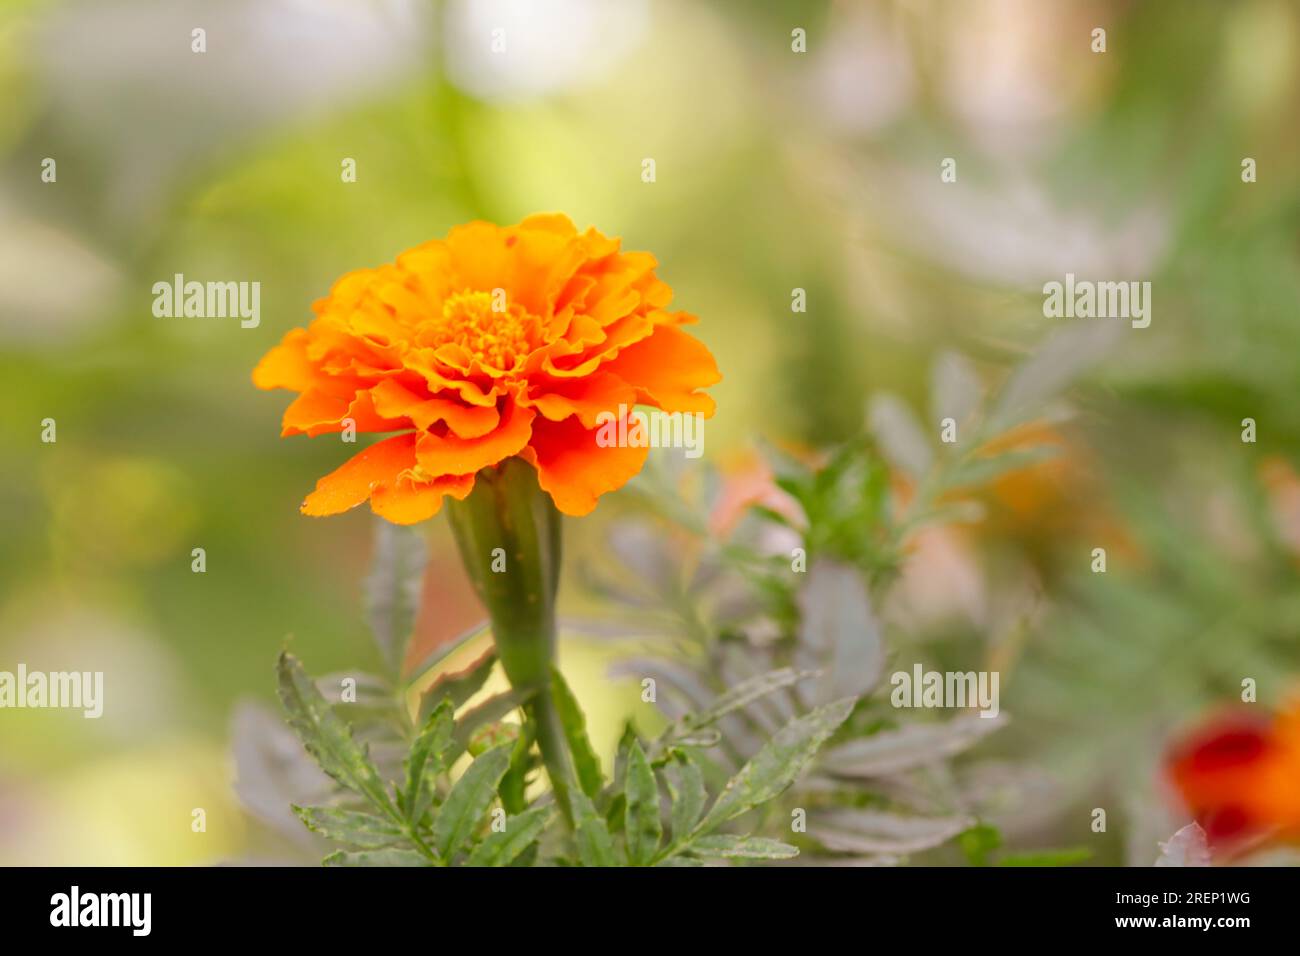 Fiore di calendula d'arancia francese (Tagetes) in piena fioritura Foto Stock